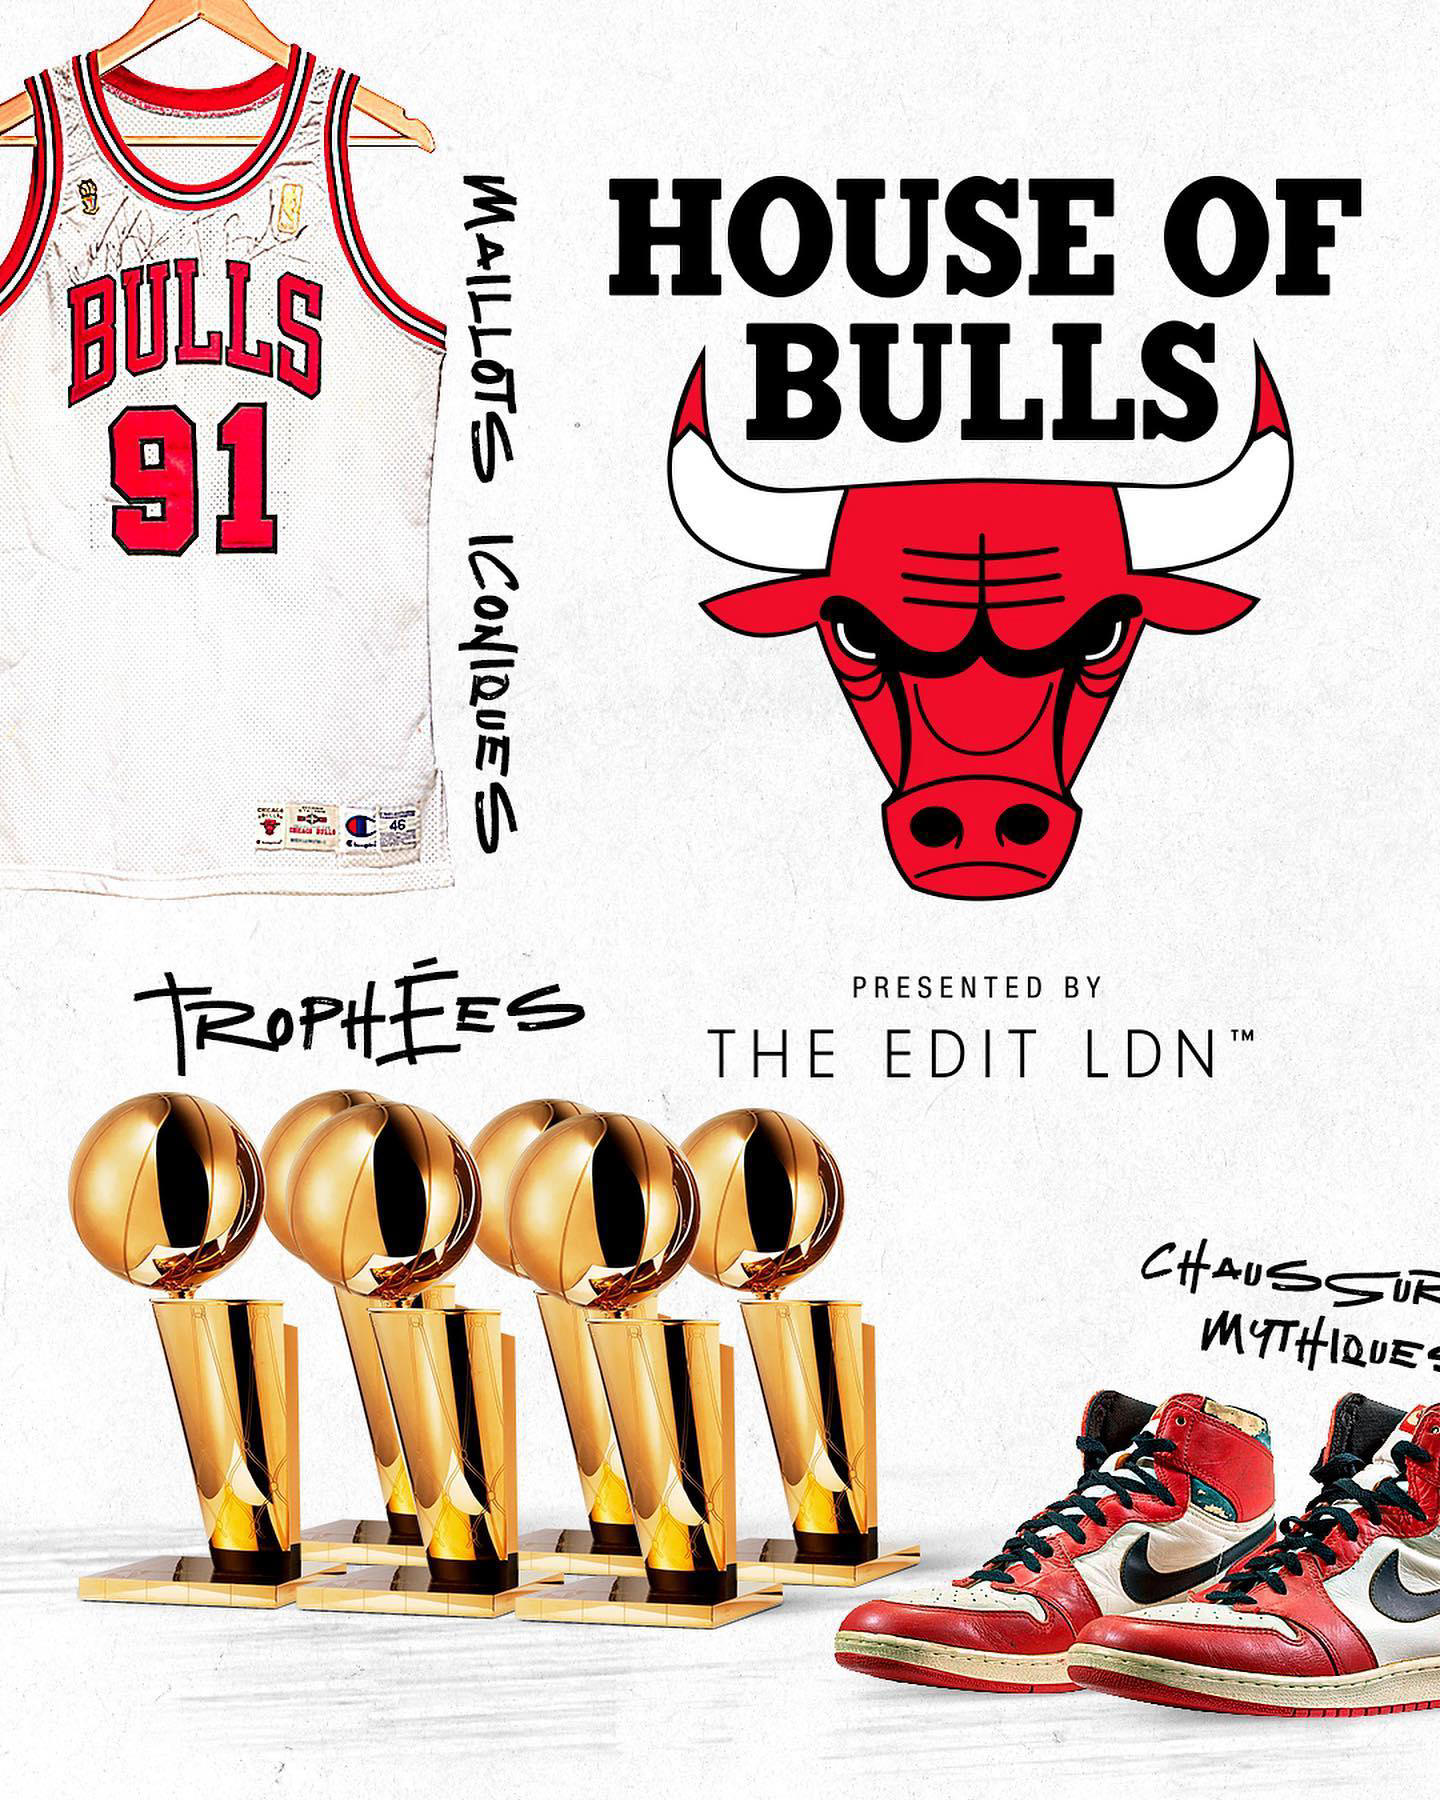 Chicago Bulls - Découvrez la 𝐻𝑜𝑢𝑠𝑒 𝑜𝑓 𝐵𝑢𝑙𝑙𝑠 #theeditldn dès jeudi 16h à l'Aérogare des I